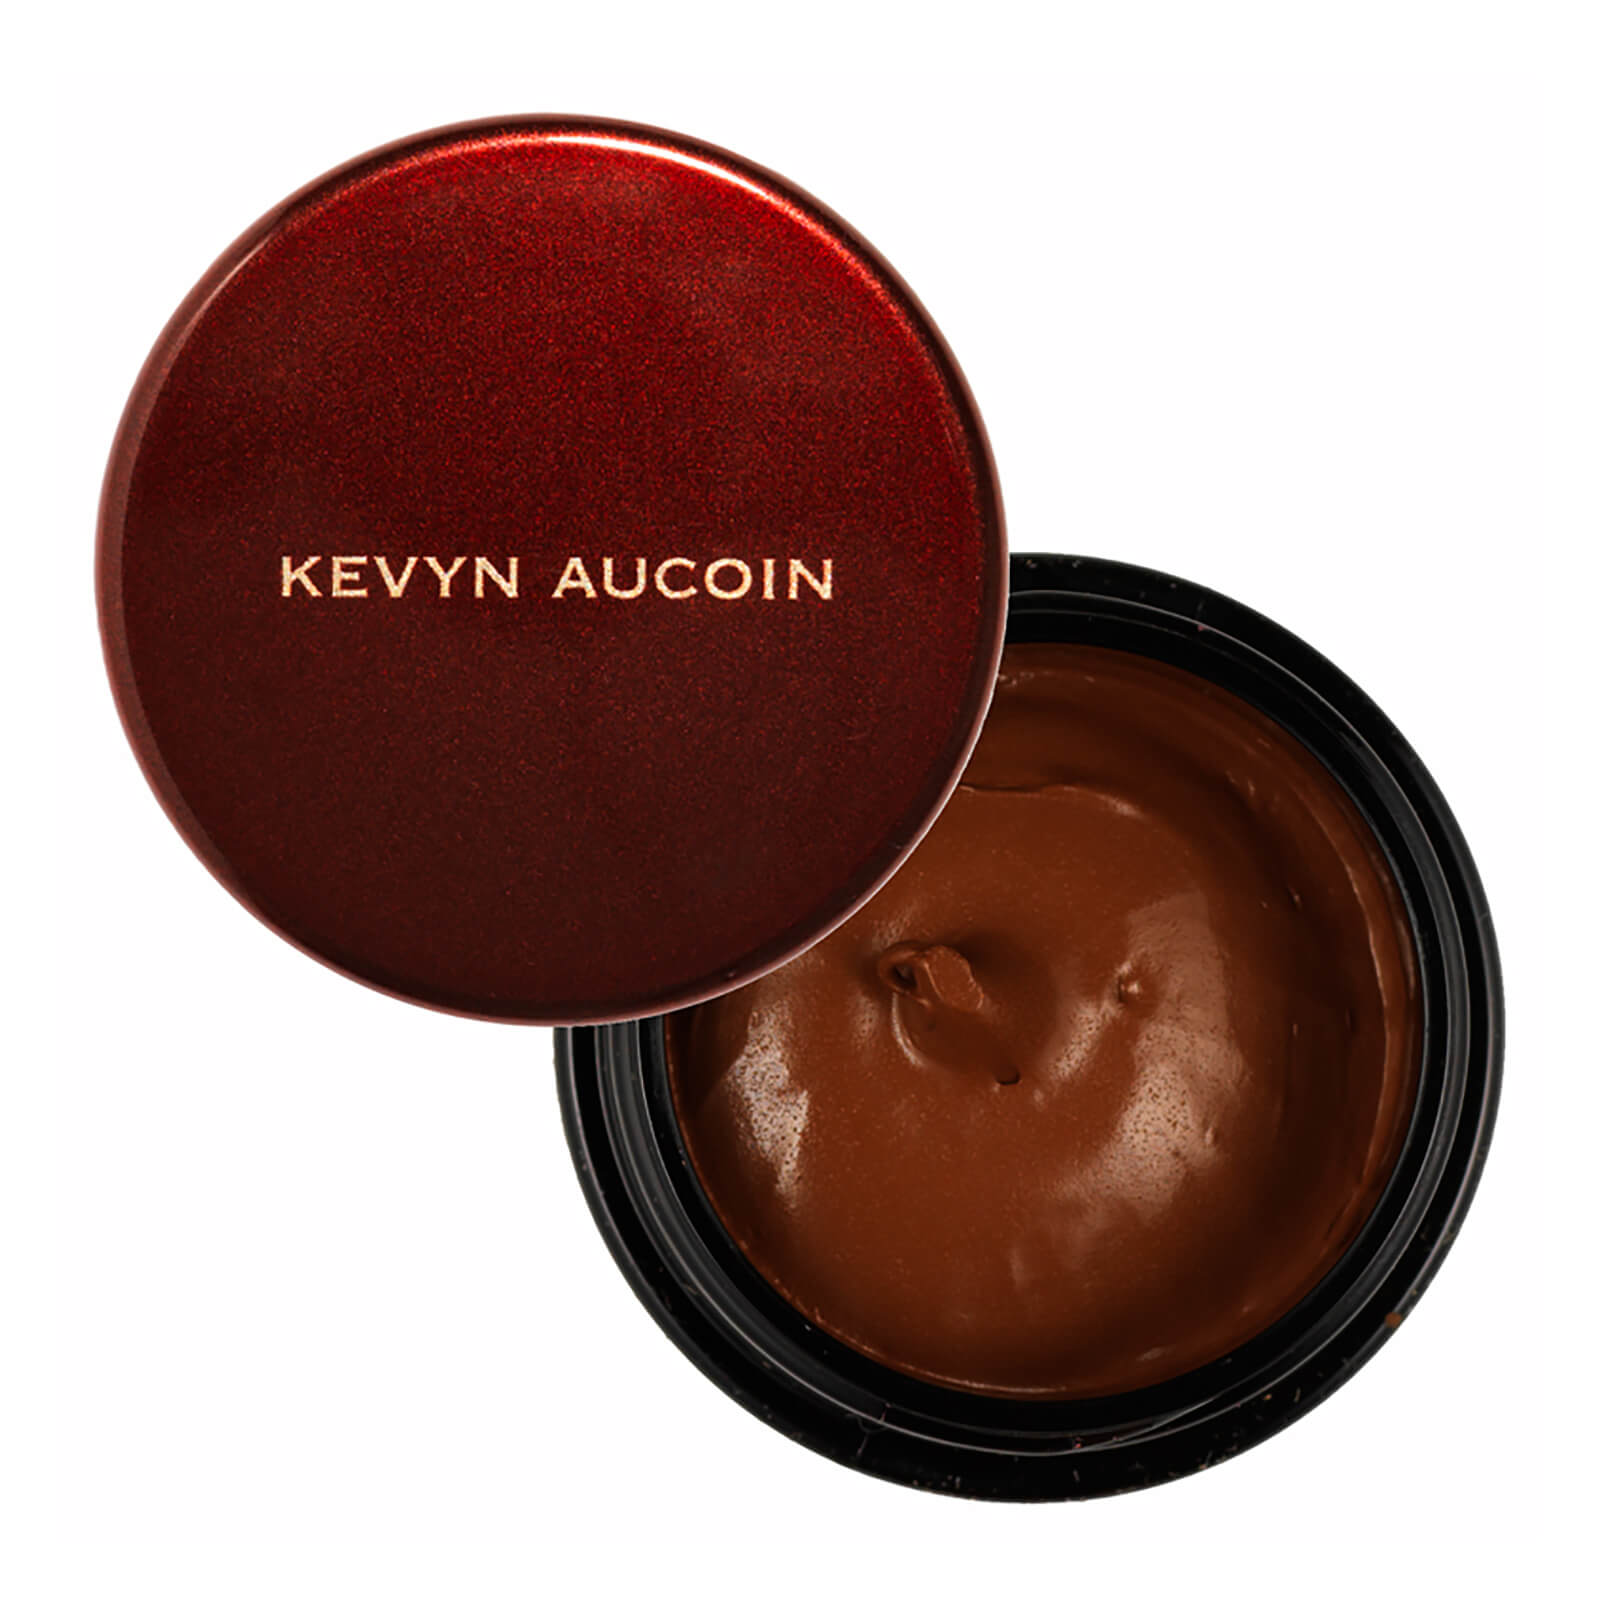 Kevyn Aucoin The Sensual Skin Enhancer (Various Shades) - SX 15